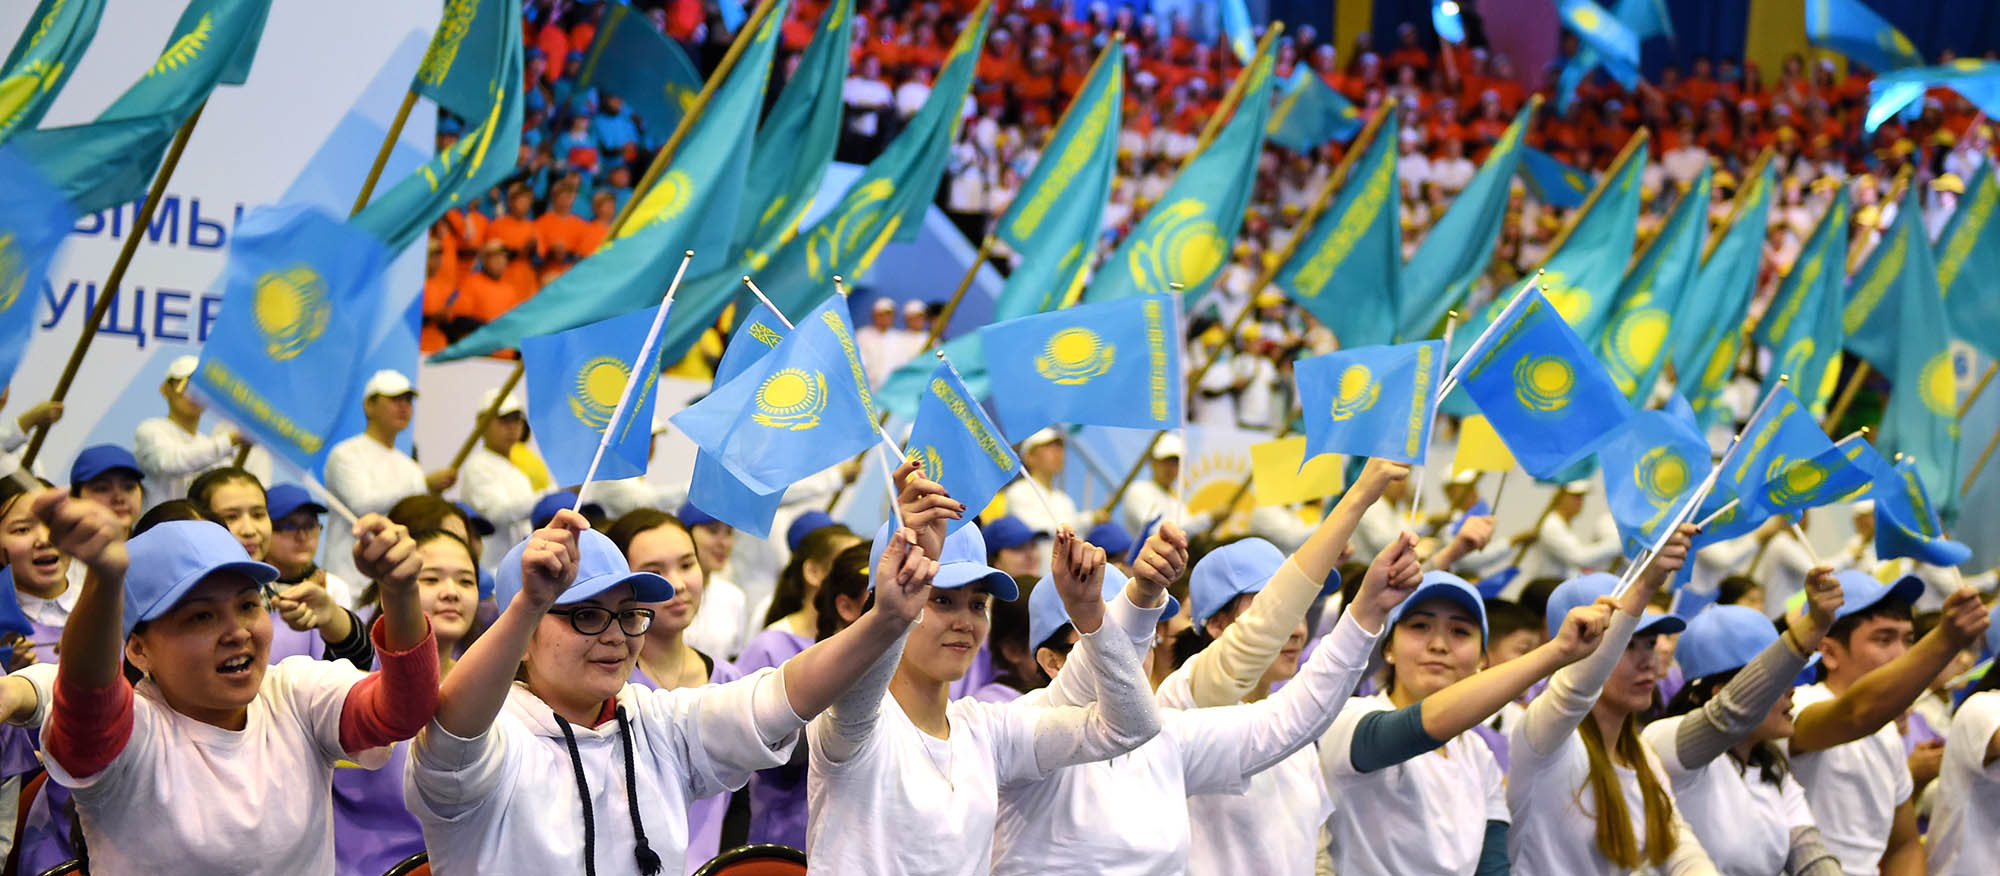 Численность молодёжи в Казахстане составляет 4 млн человек